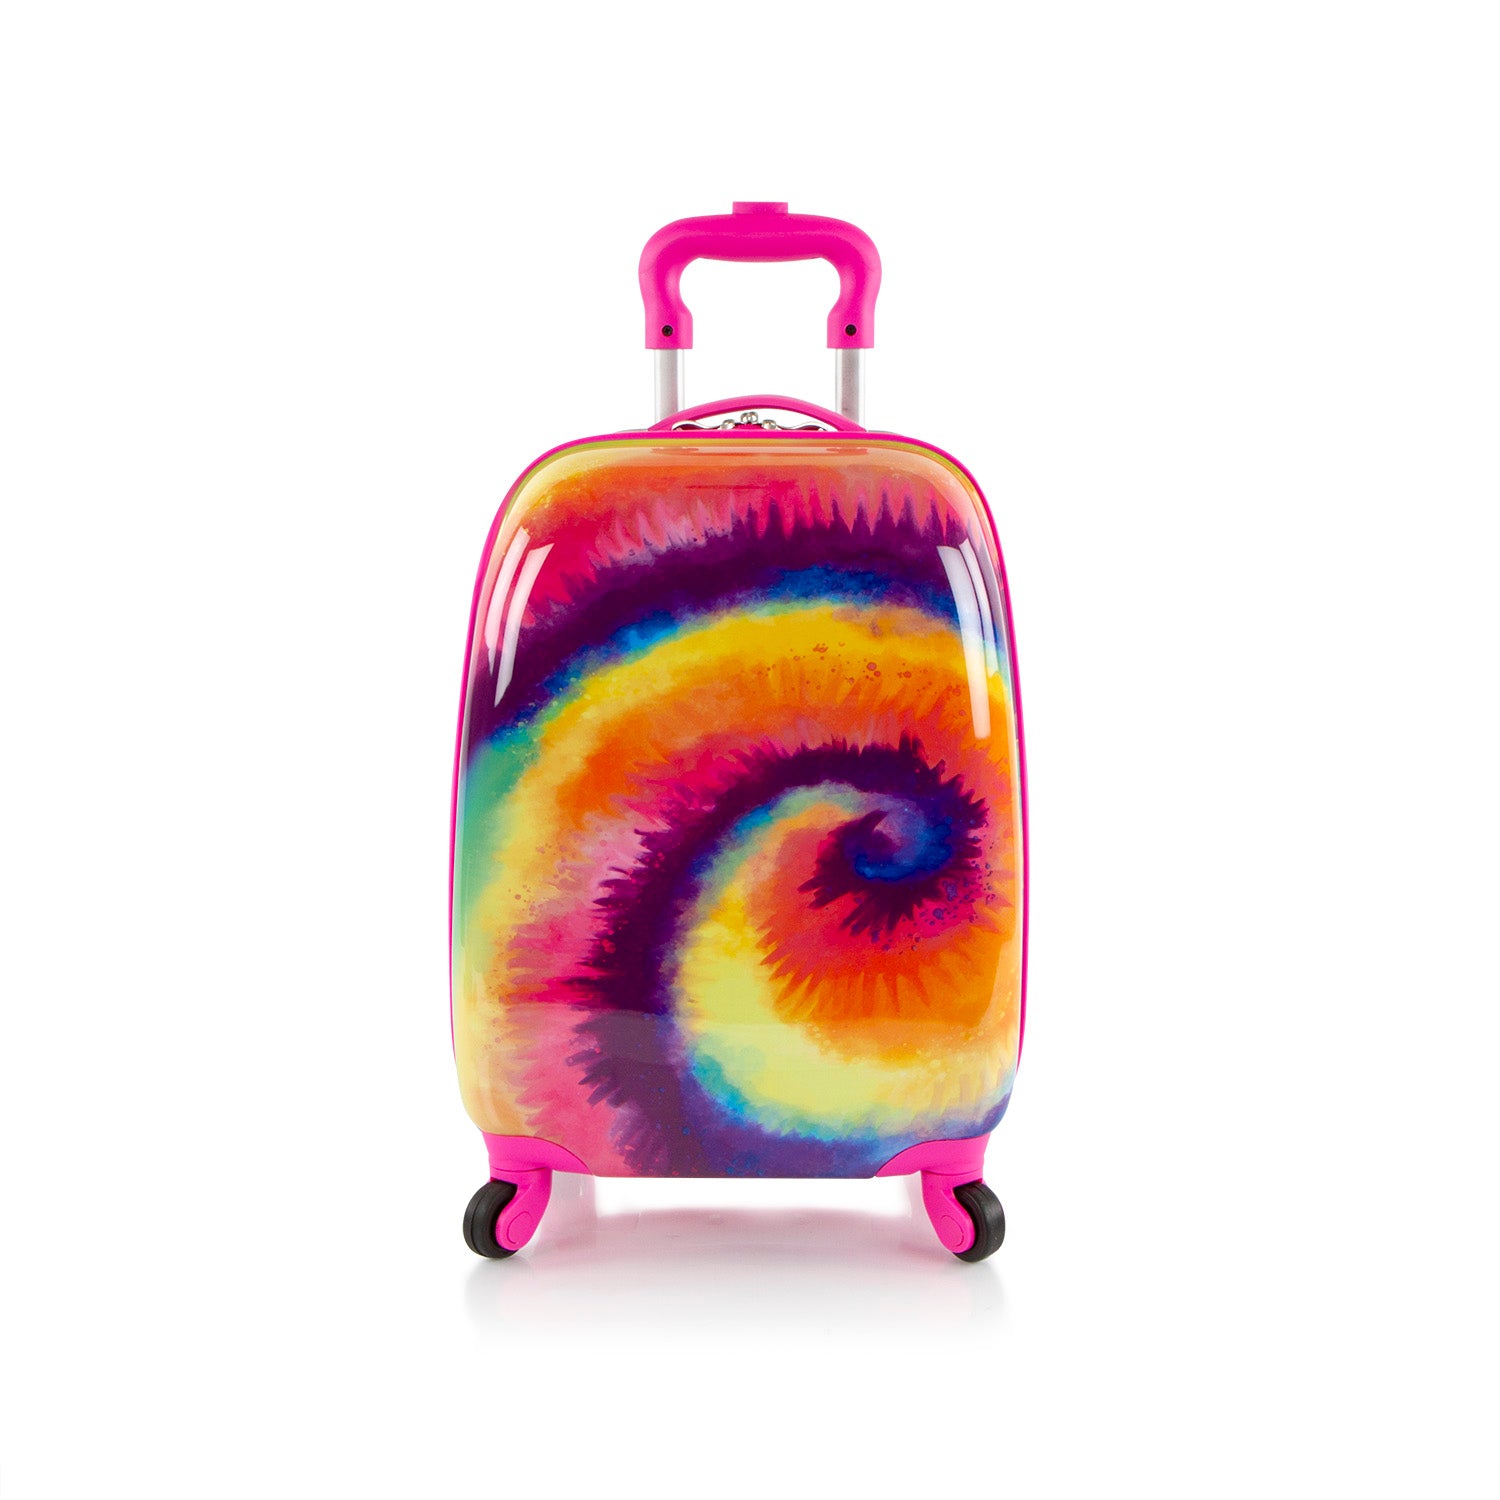 Fashion Spinner Luggage-Tie-Dye (HEYS-HSRL-SP-FH05-20AR)